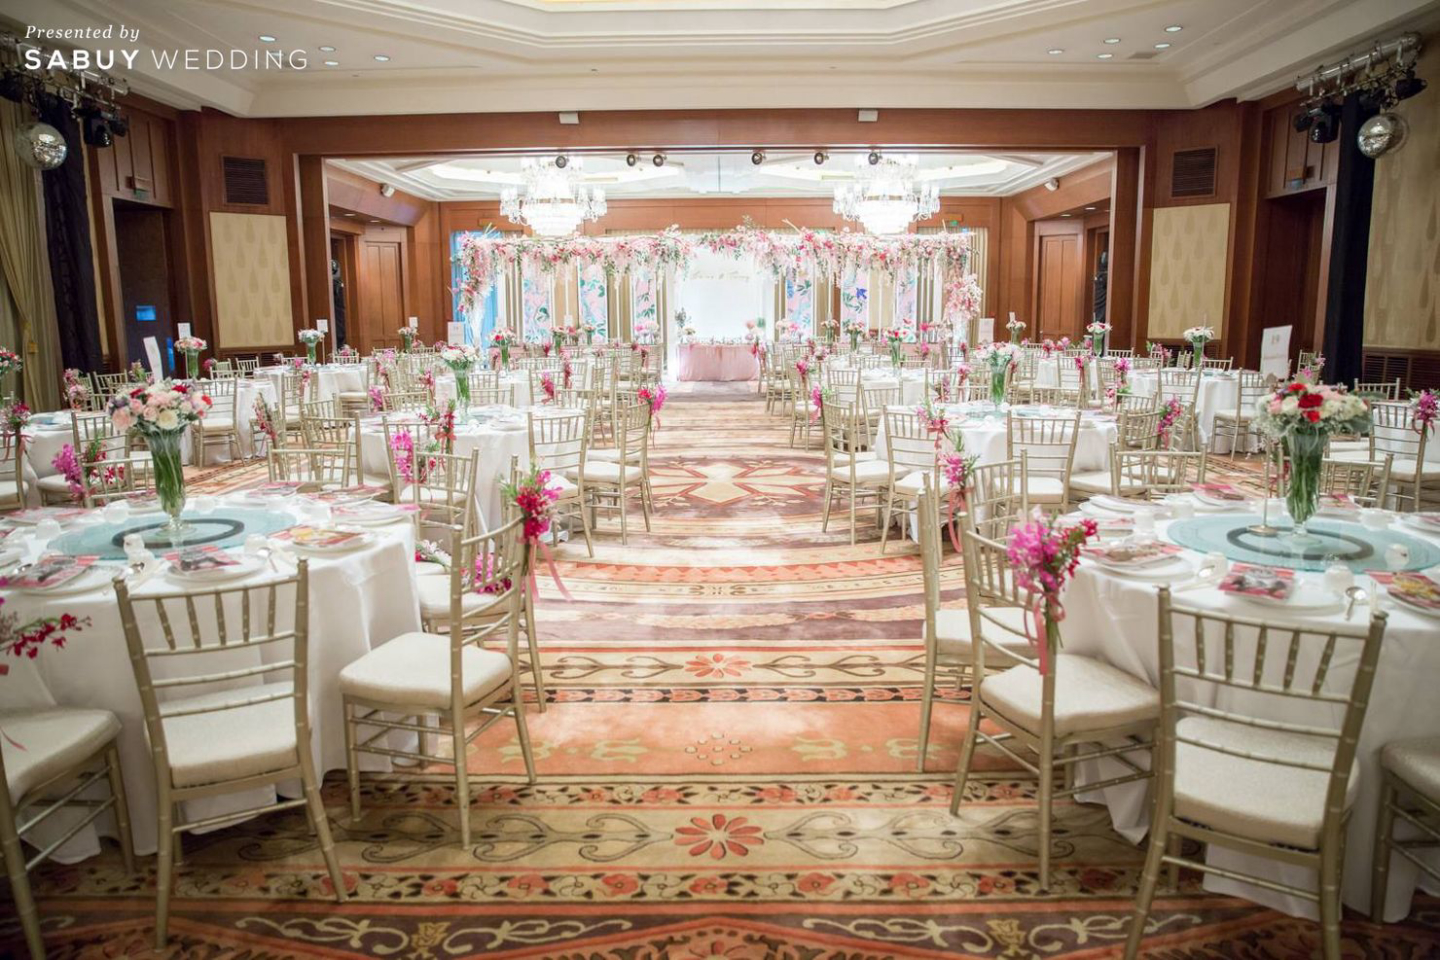 โรงแรม,สถานที่แต่งงาน,โต๊ะจีน,ตกแต่งงานแต่ง,จัดดอกไม้งานแต่ง,ธีมงานแต่ง รีวิวงานแต่งแซ่บบาดใจ สไตล์เจ้าสาวแฟชั่นนิสต้า @The Peninsula Bangkok